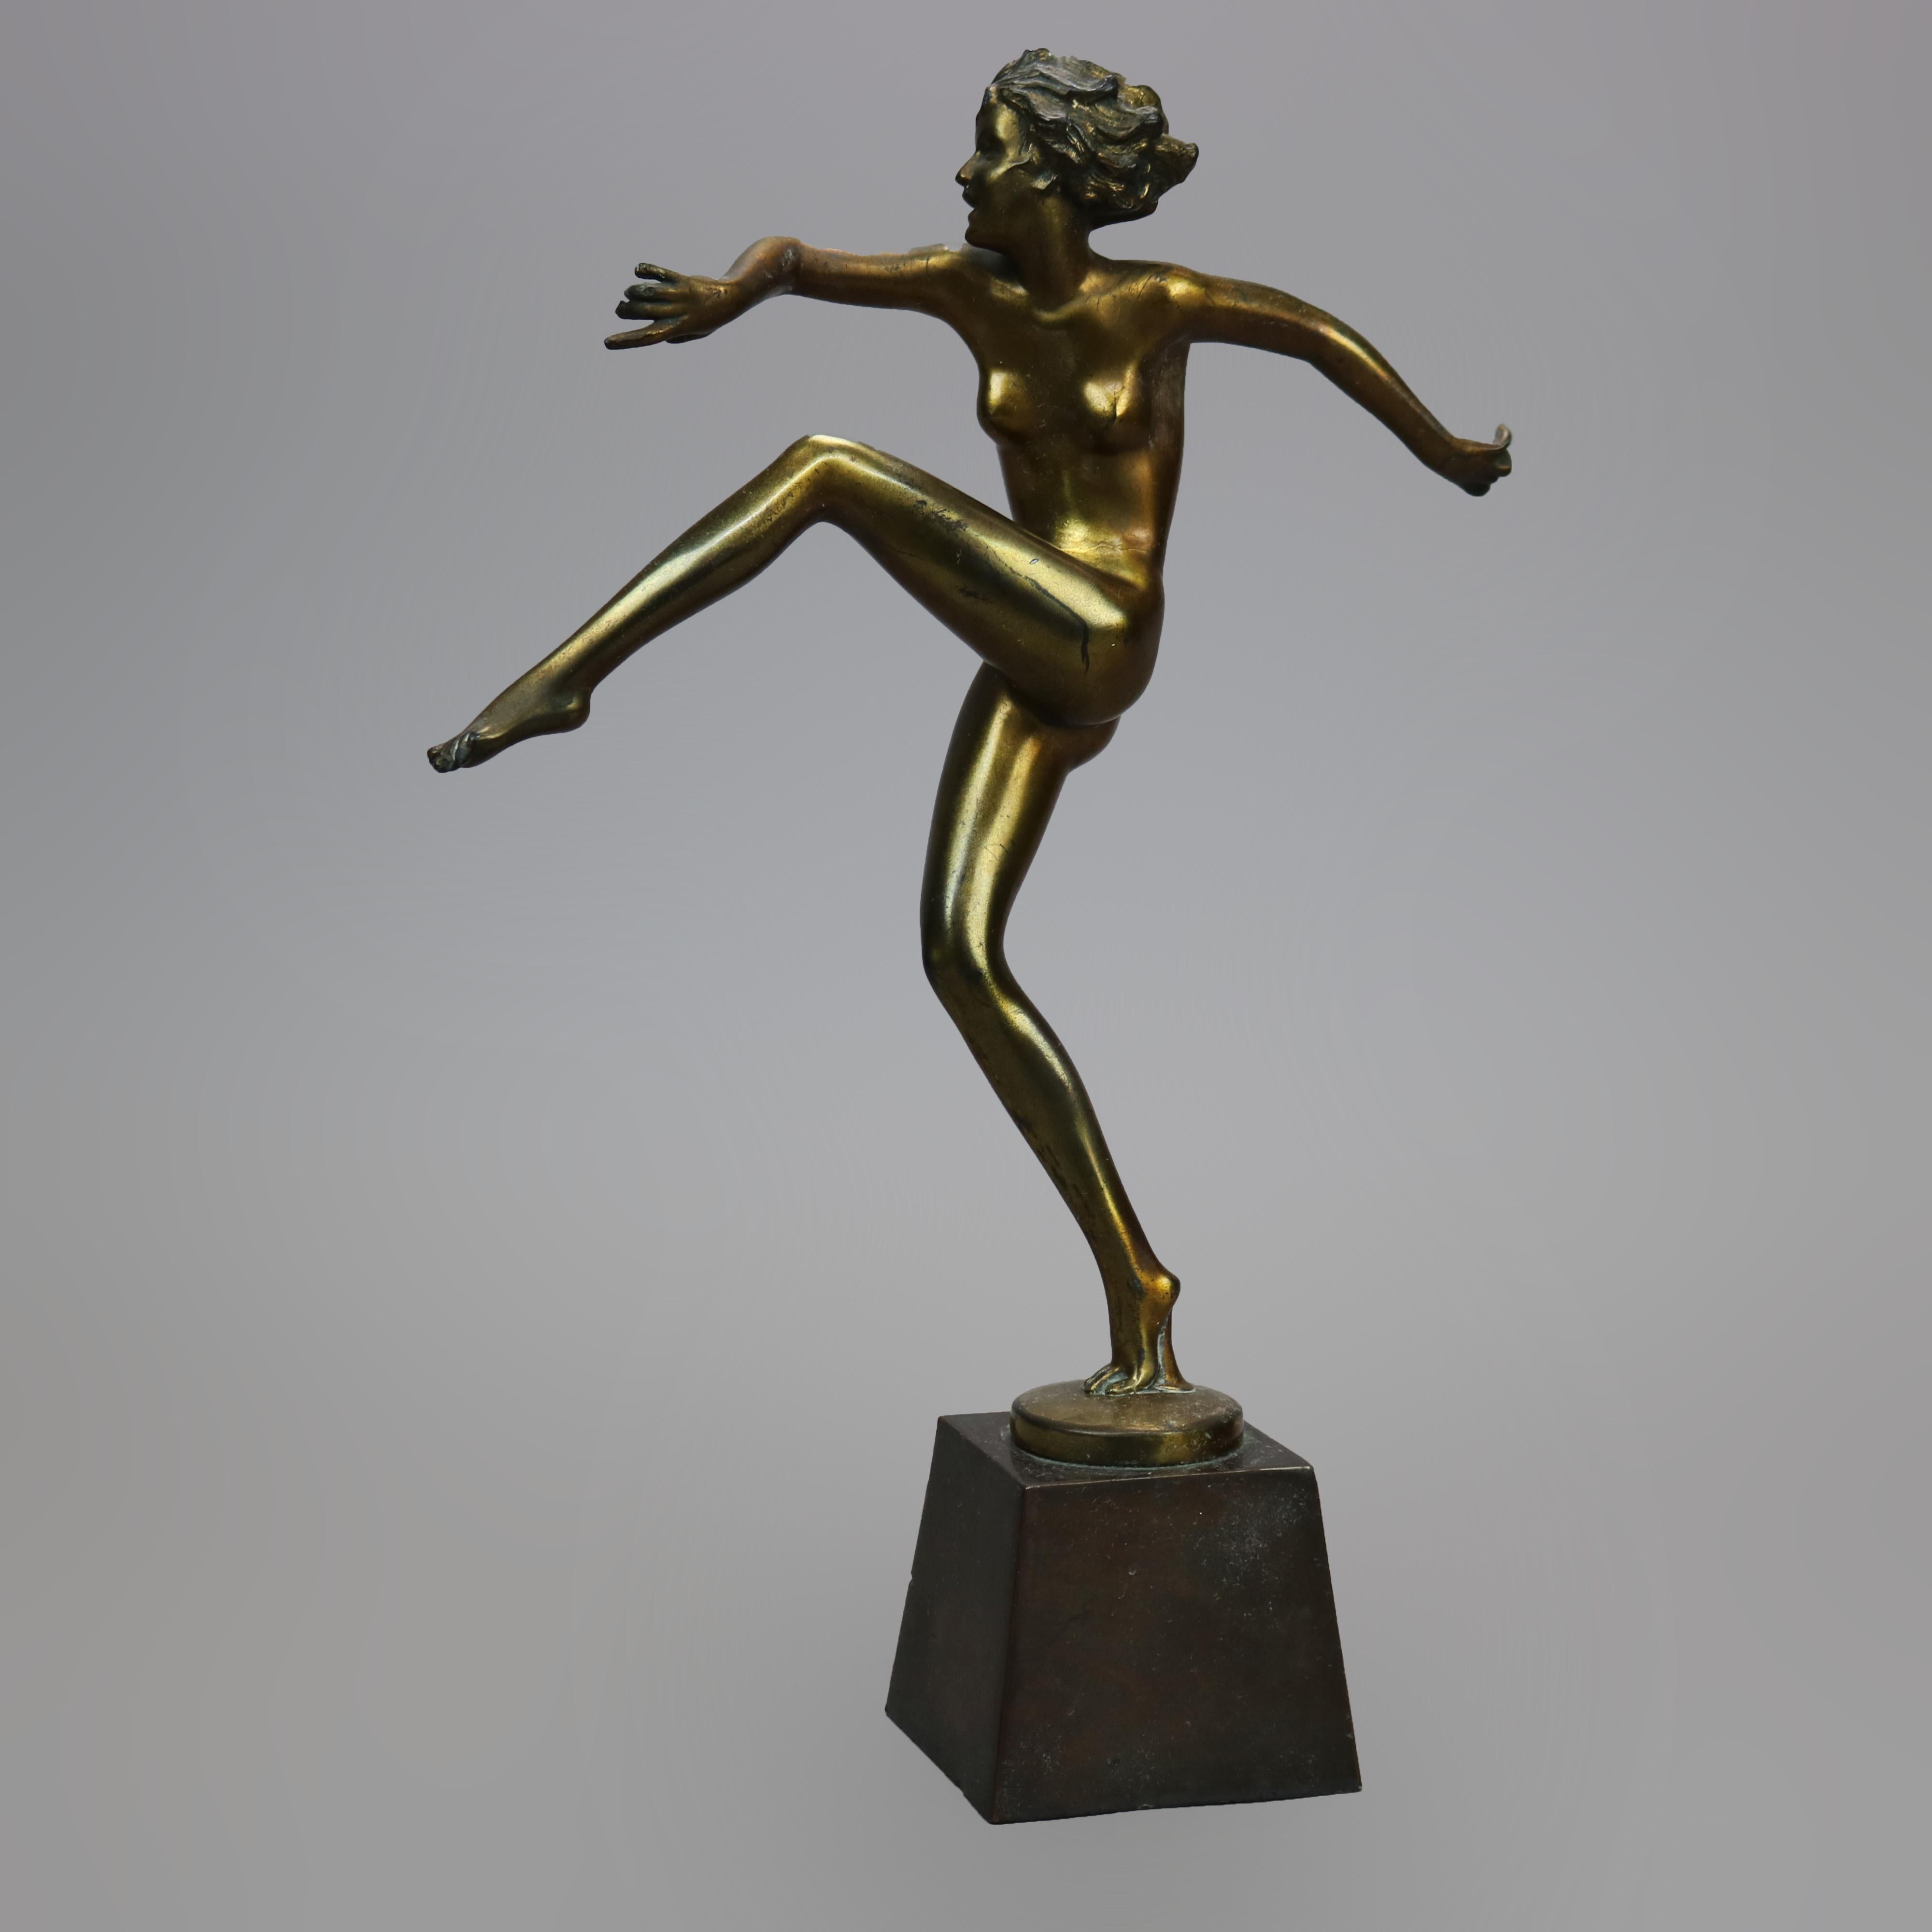 An antique Art Deco Ronson figure offers cast metal dancing nude woman on plinth, c1920

Measures - 13.75''H X 3.25''W X 9.25''D.